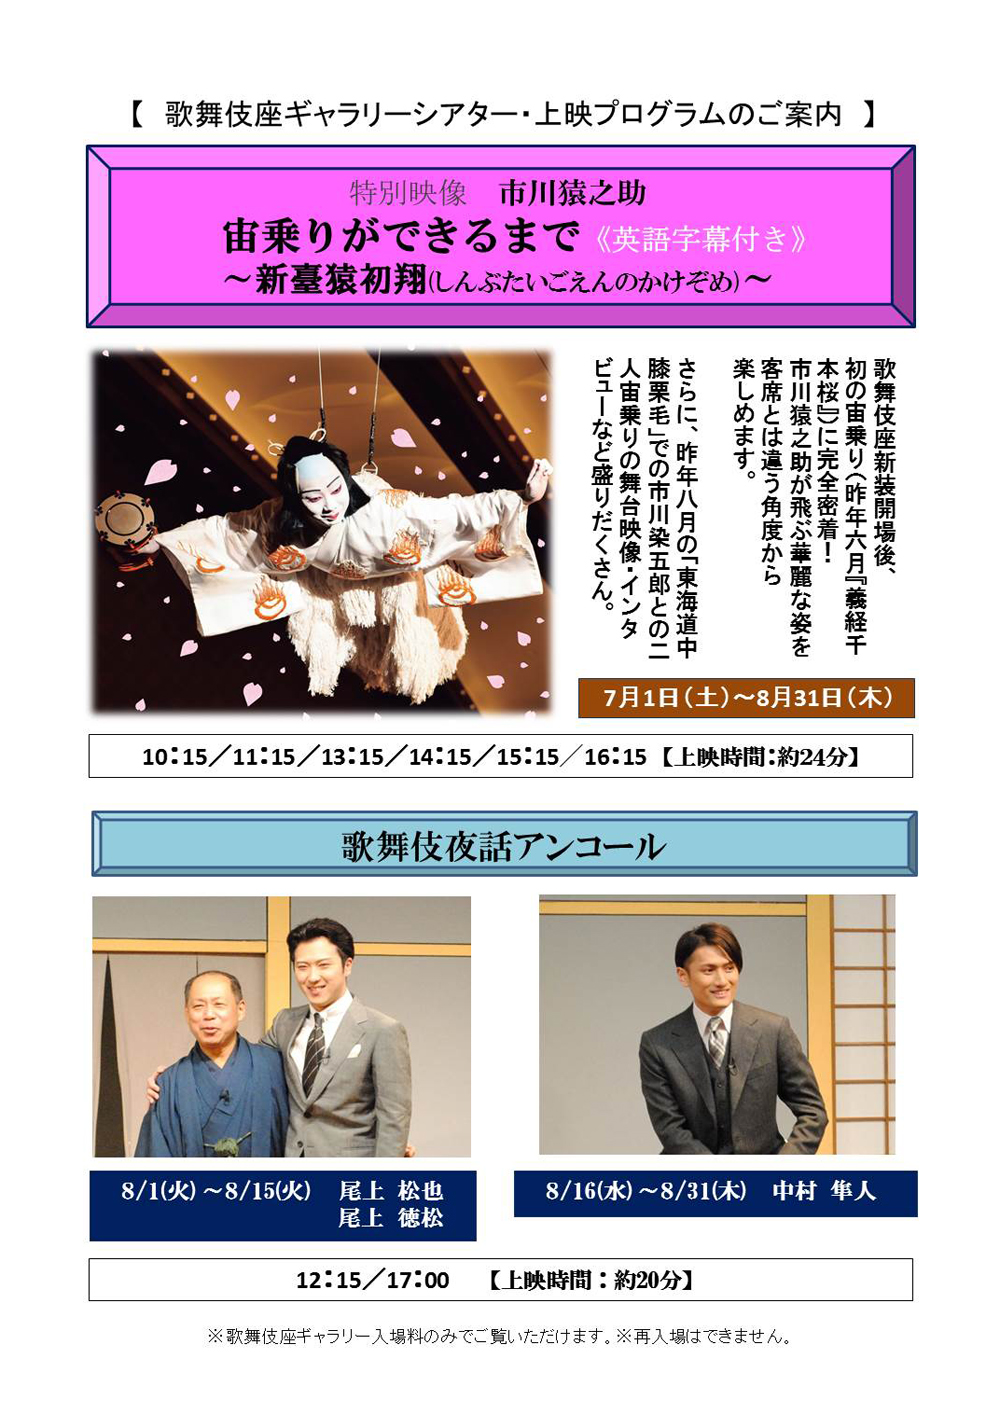 歌舞伎座ギャラリー「歌舞伎夜話アンコール」「特別映像」8月のスケジュール決定